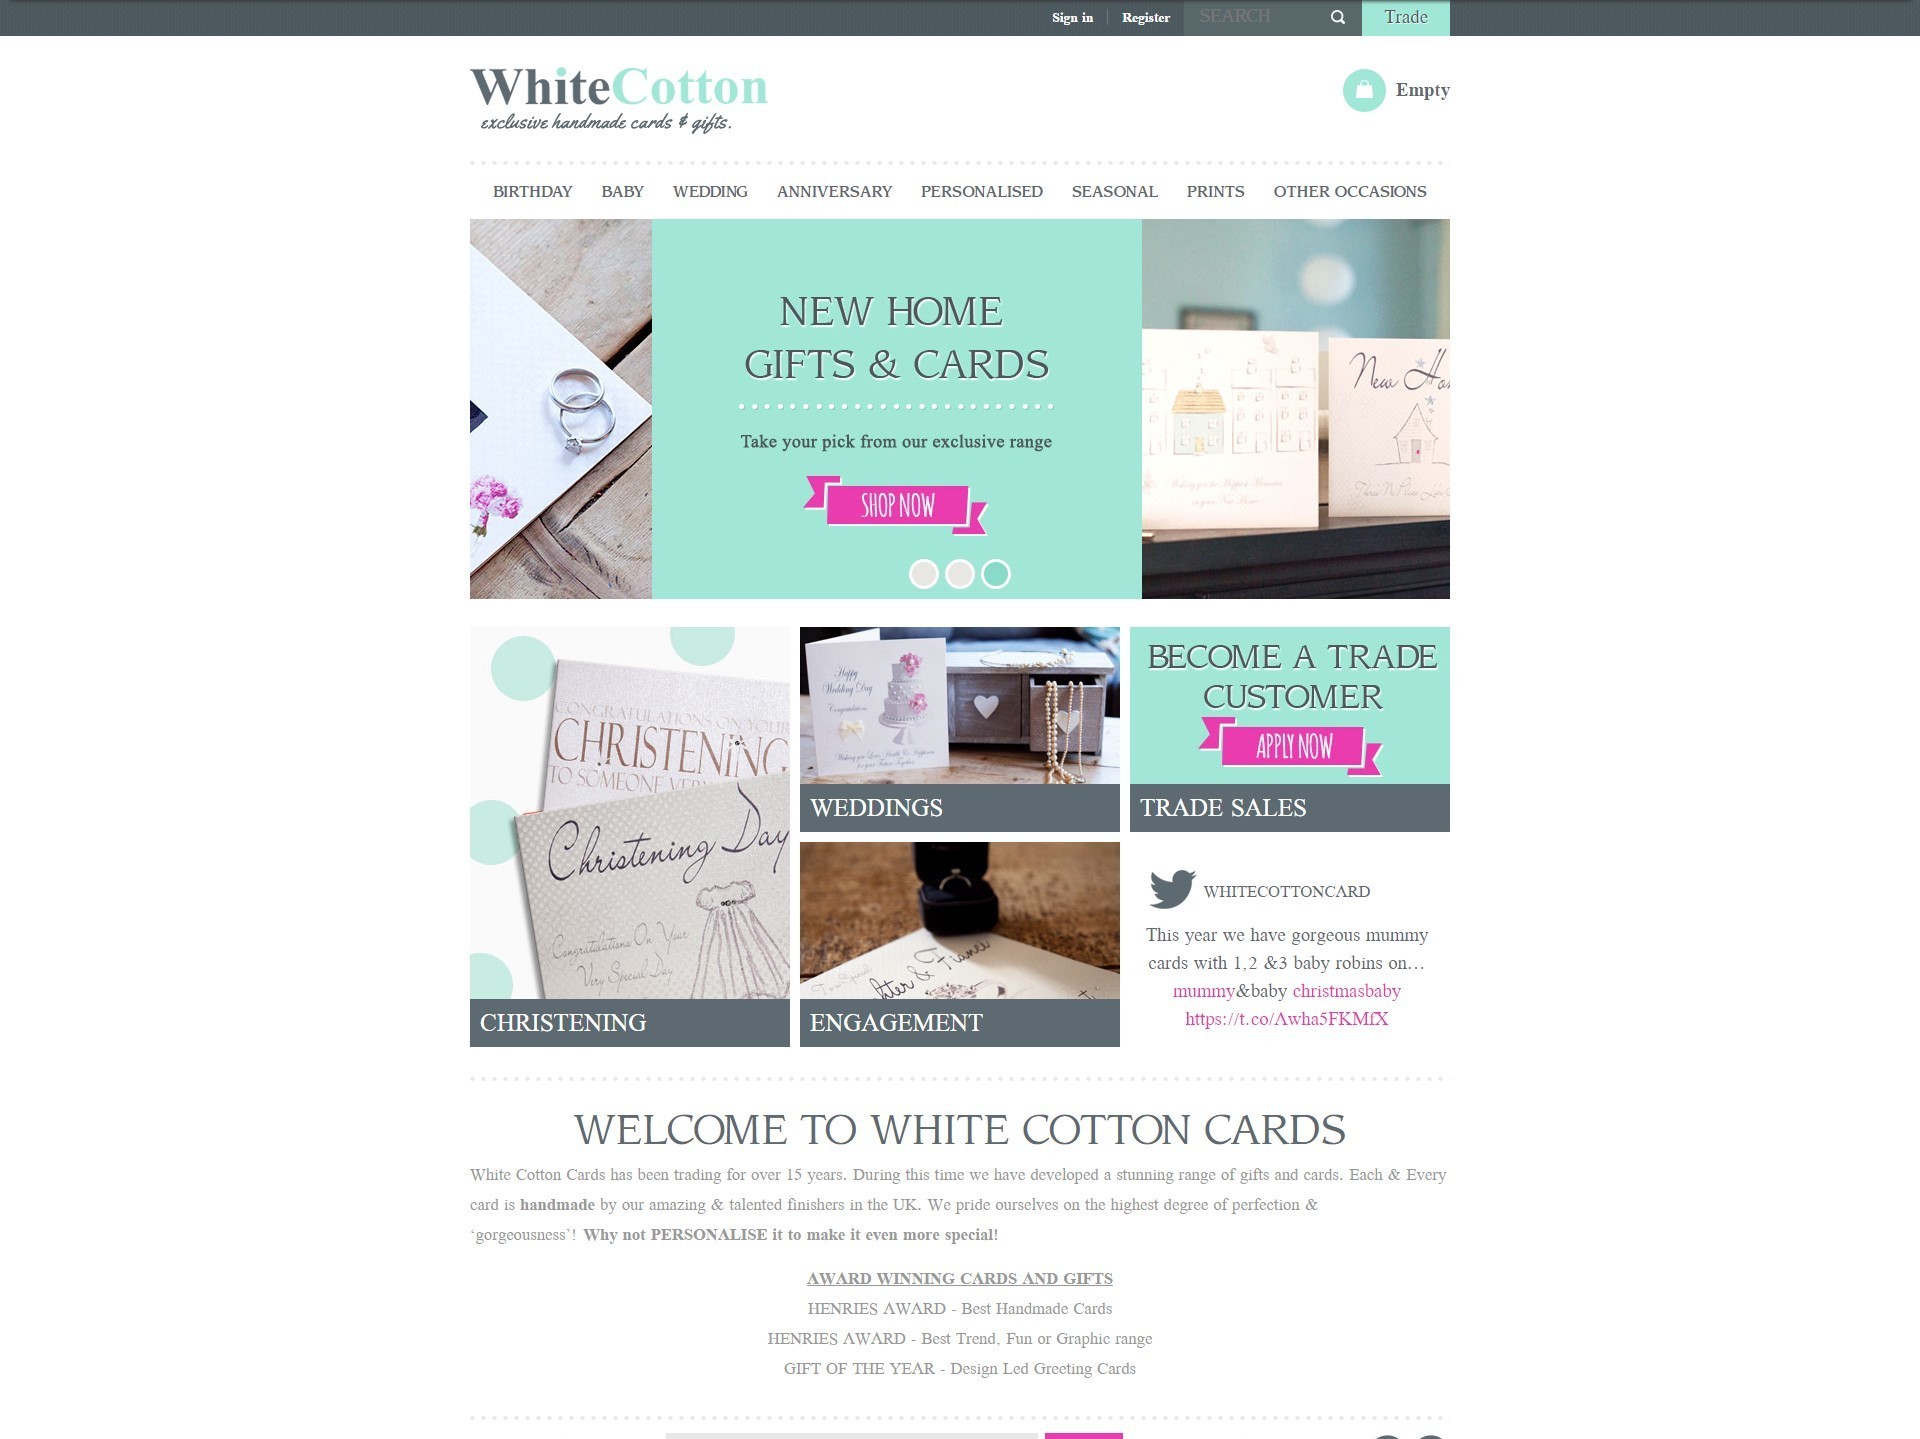 The previous White Cotton site, shown on desktop